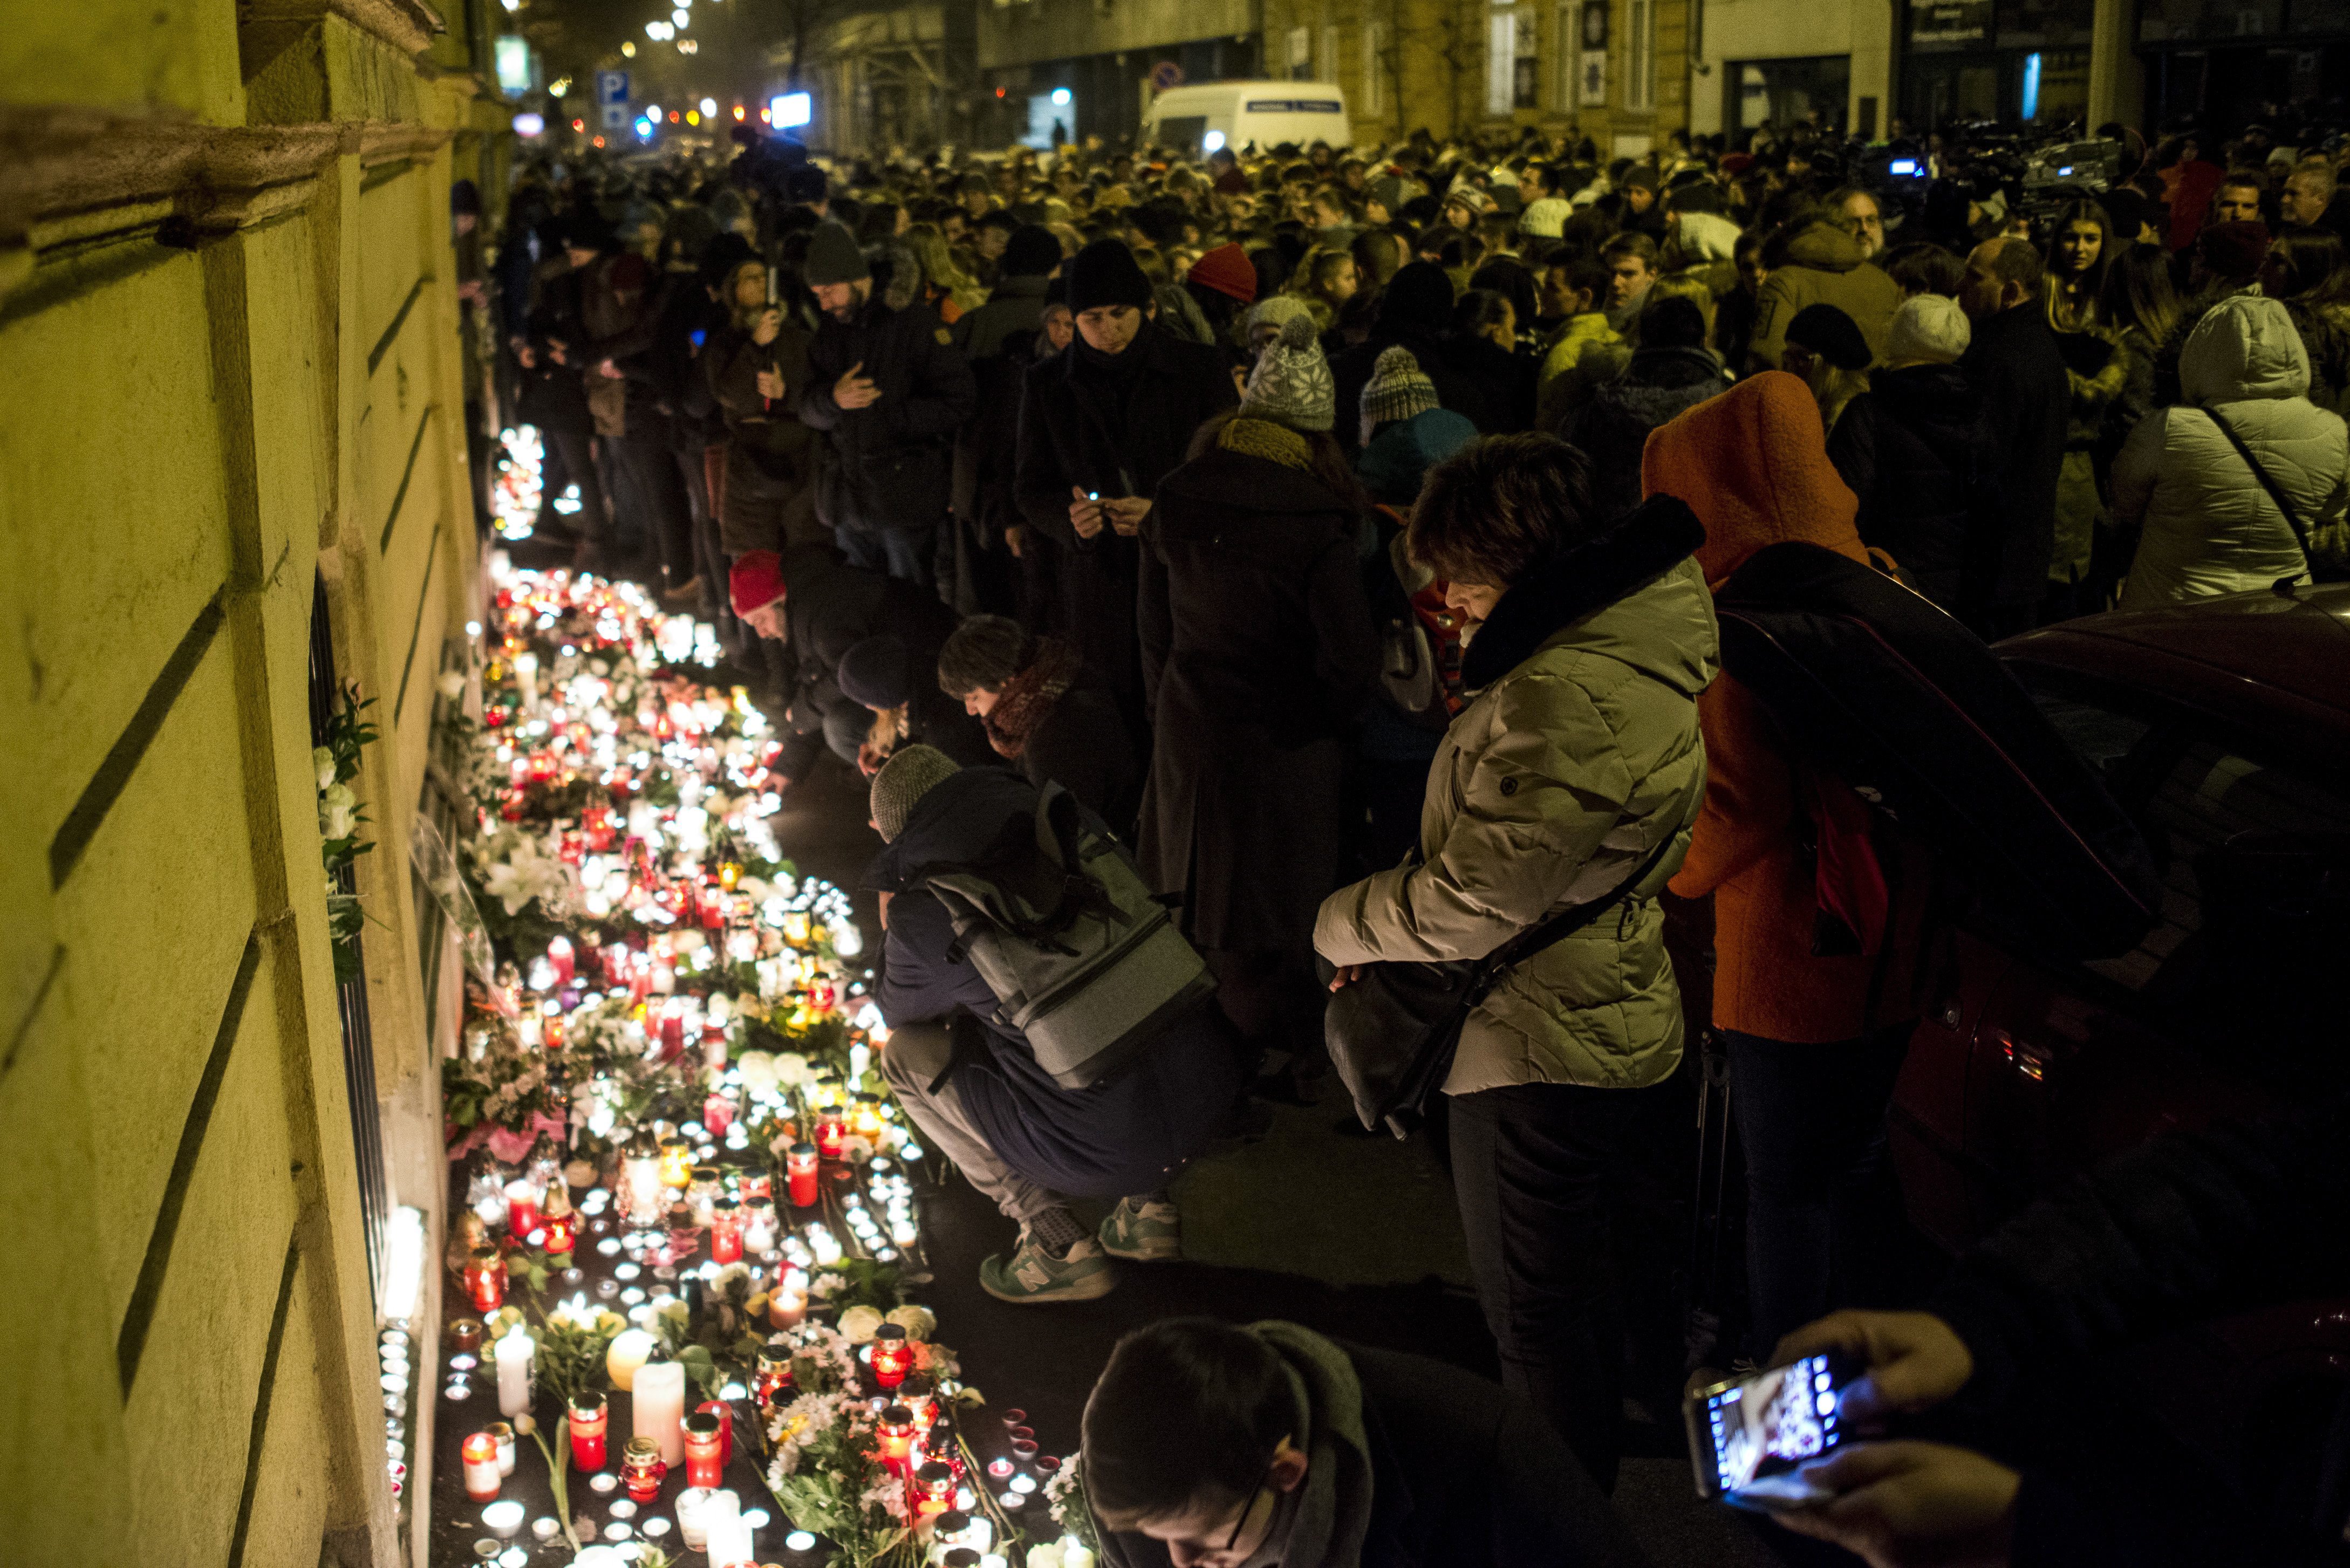 Megemlékezők mécsest gyújtanak az előző napon este történt buszbaleset áldozatainak emlékére a VI. kerületi Szinyei Merse Pál Gimnázium előtt (Fotó: Marjai János / MTI)